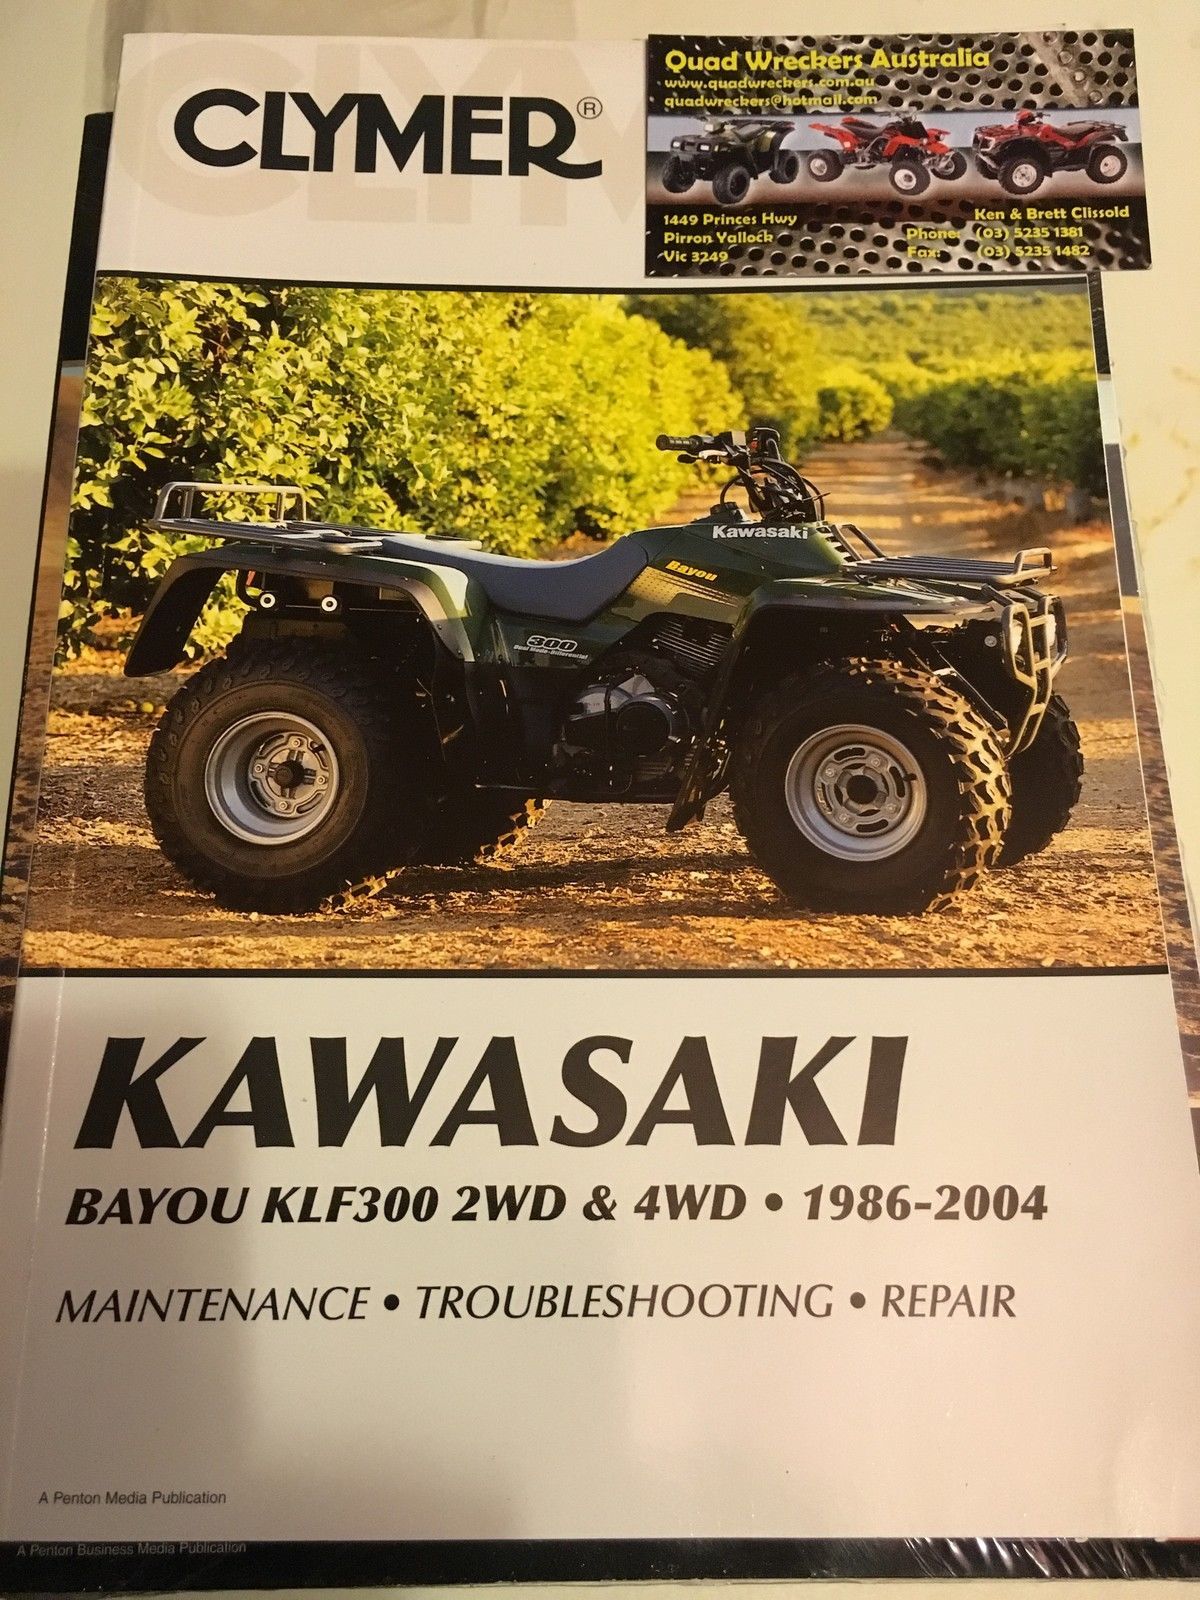 KAWASAKI KLF 300 BAYOU ATV CLYMER WORKSHOP MANUAL